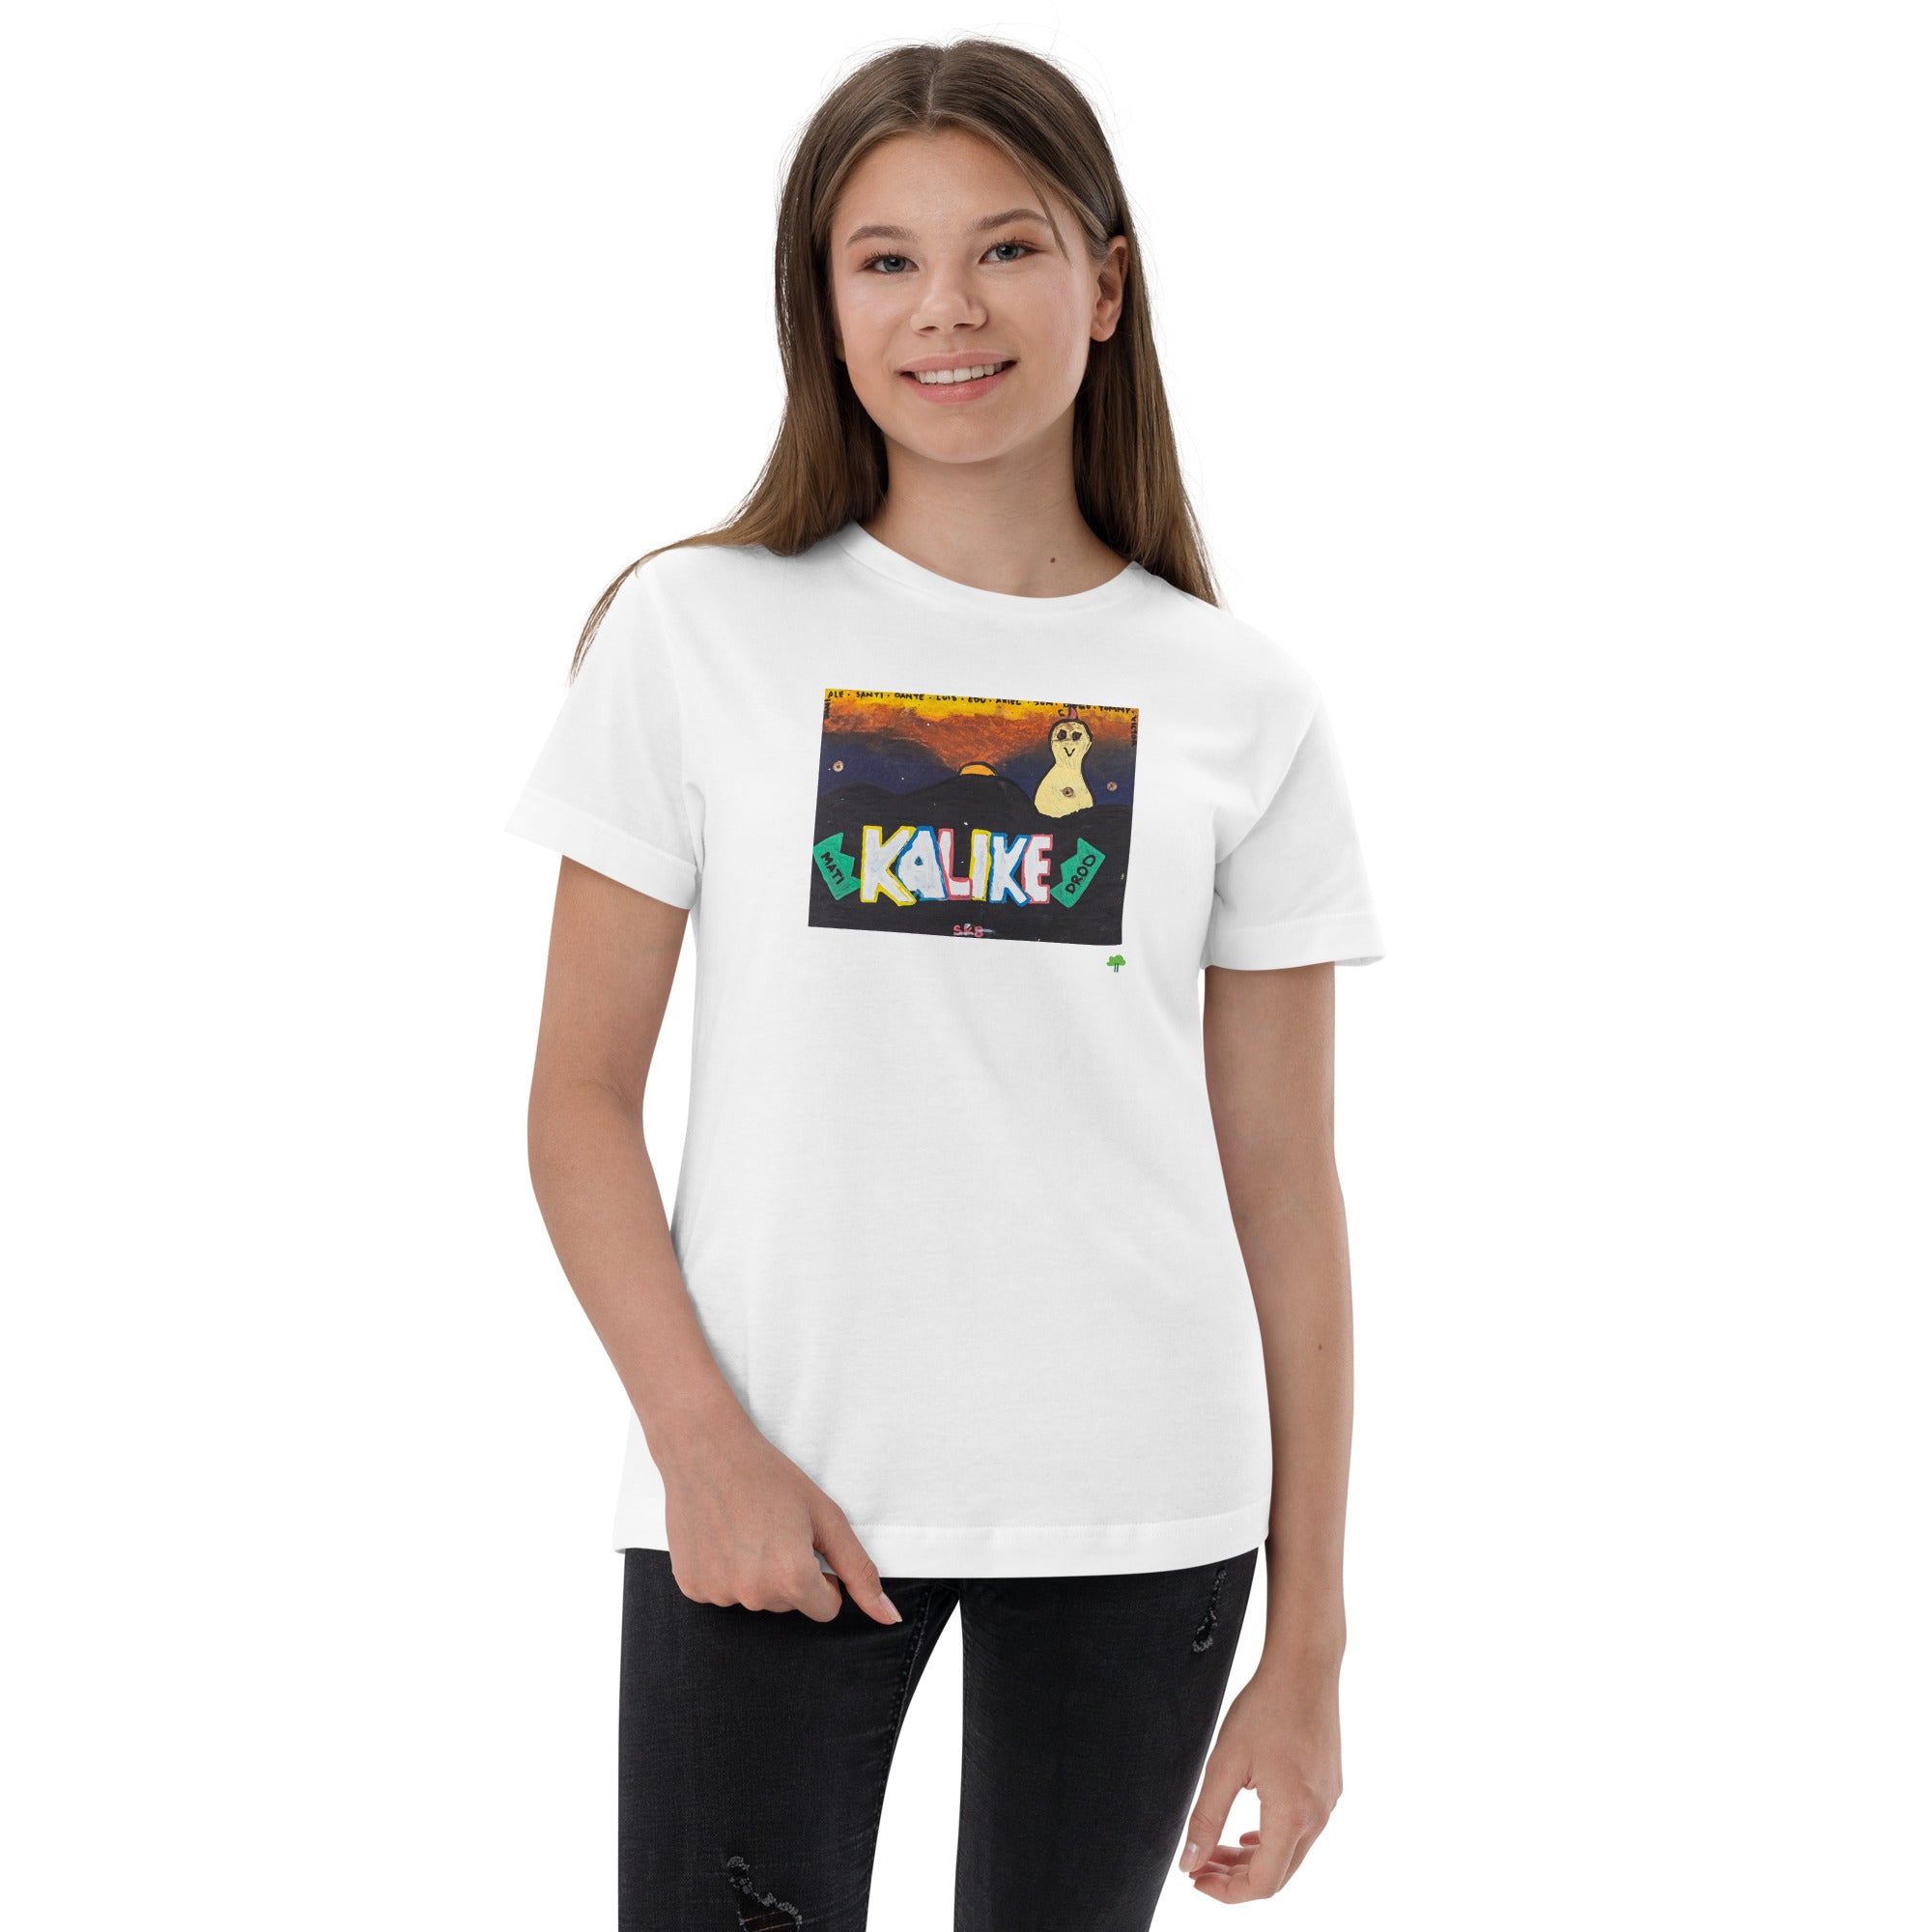 I Temp - Sabana - K8 | Youth jersey t-shirt